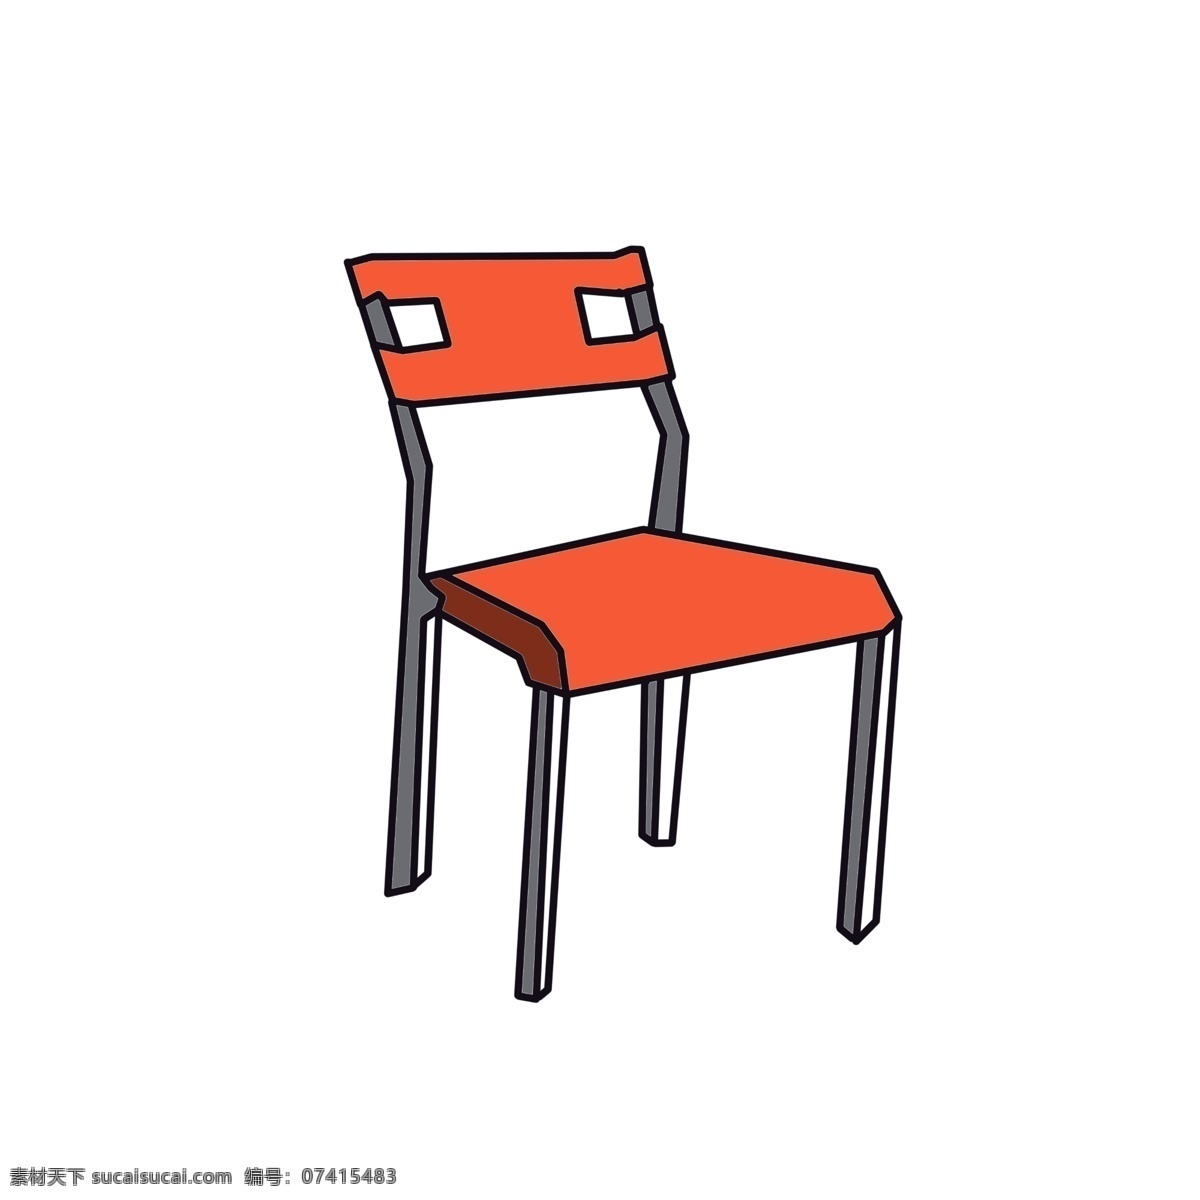 橘 色 靠背椅 插画 时尚座椅板凳 橘色的椅子 白 灰色 四 脚凳 家具家私 创意座椅插画 高档座椅靠背